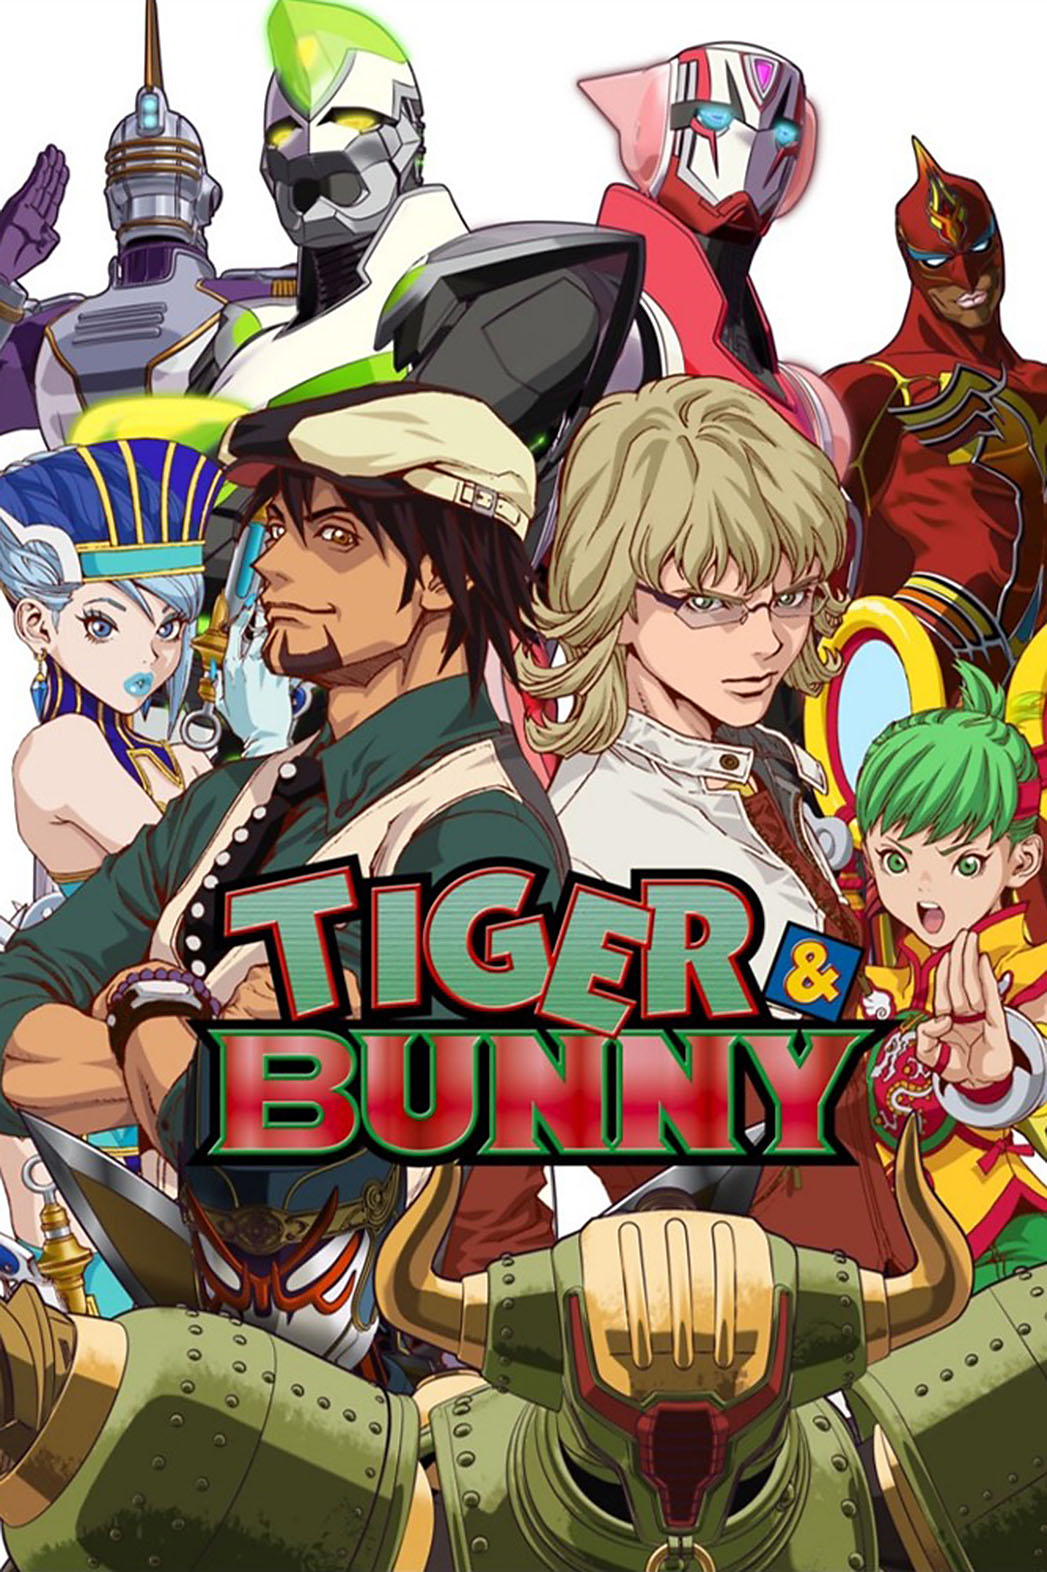 Tiger & Bunny #1